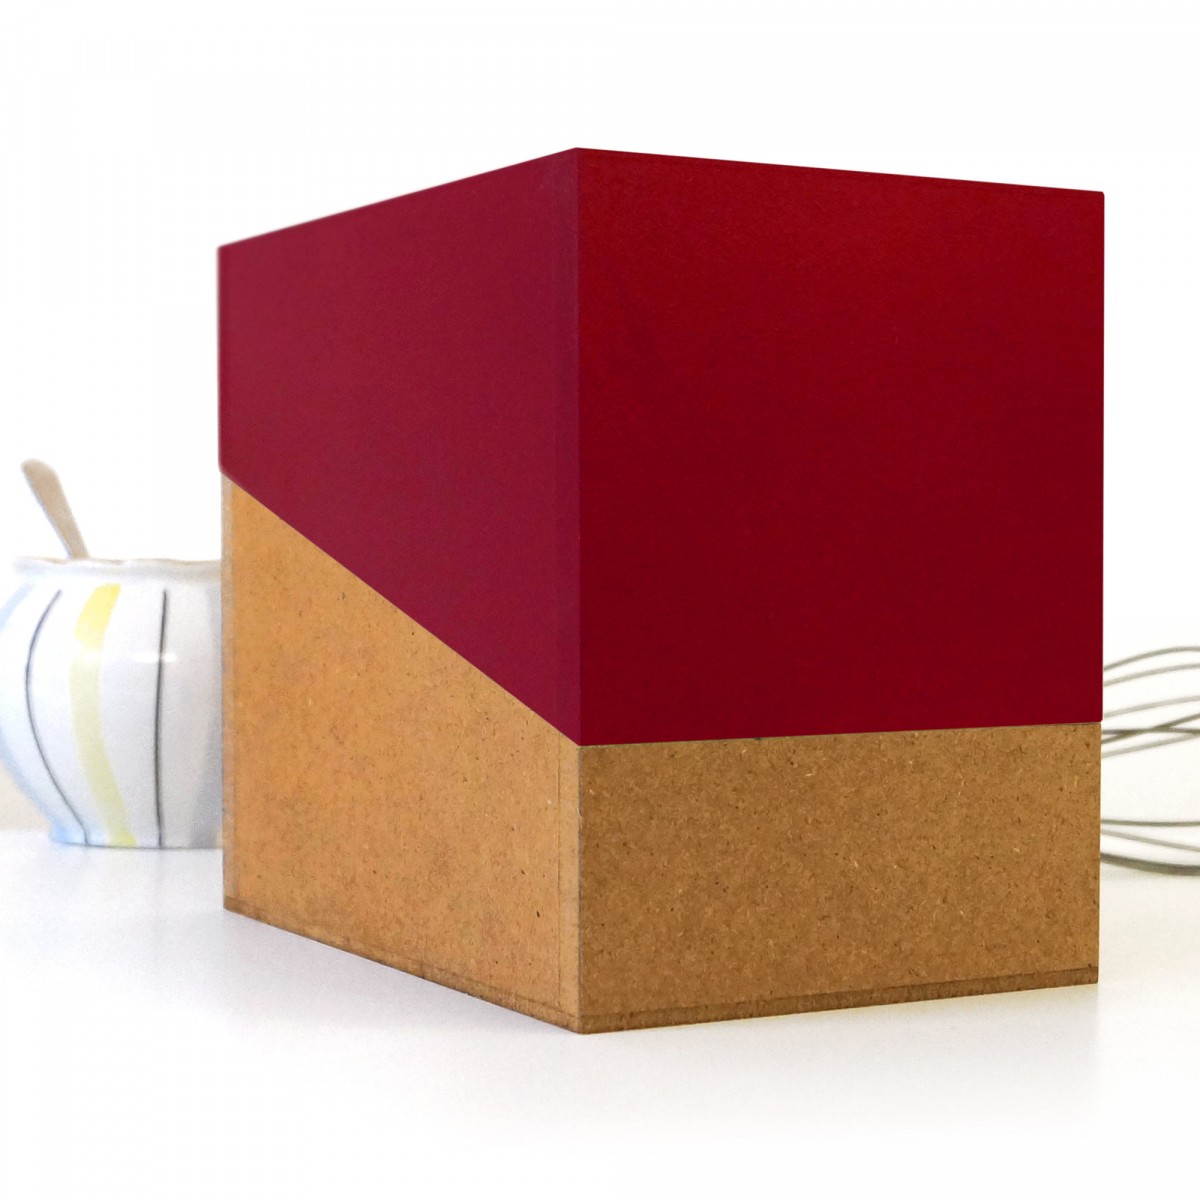 REZEPTBOX mit einfarbigem Deckel, Box fürs Backen und Kochen mit Rezeptkarten und Registern // sperlingB.design